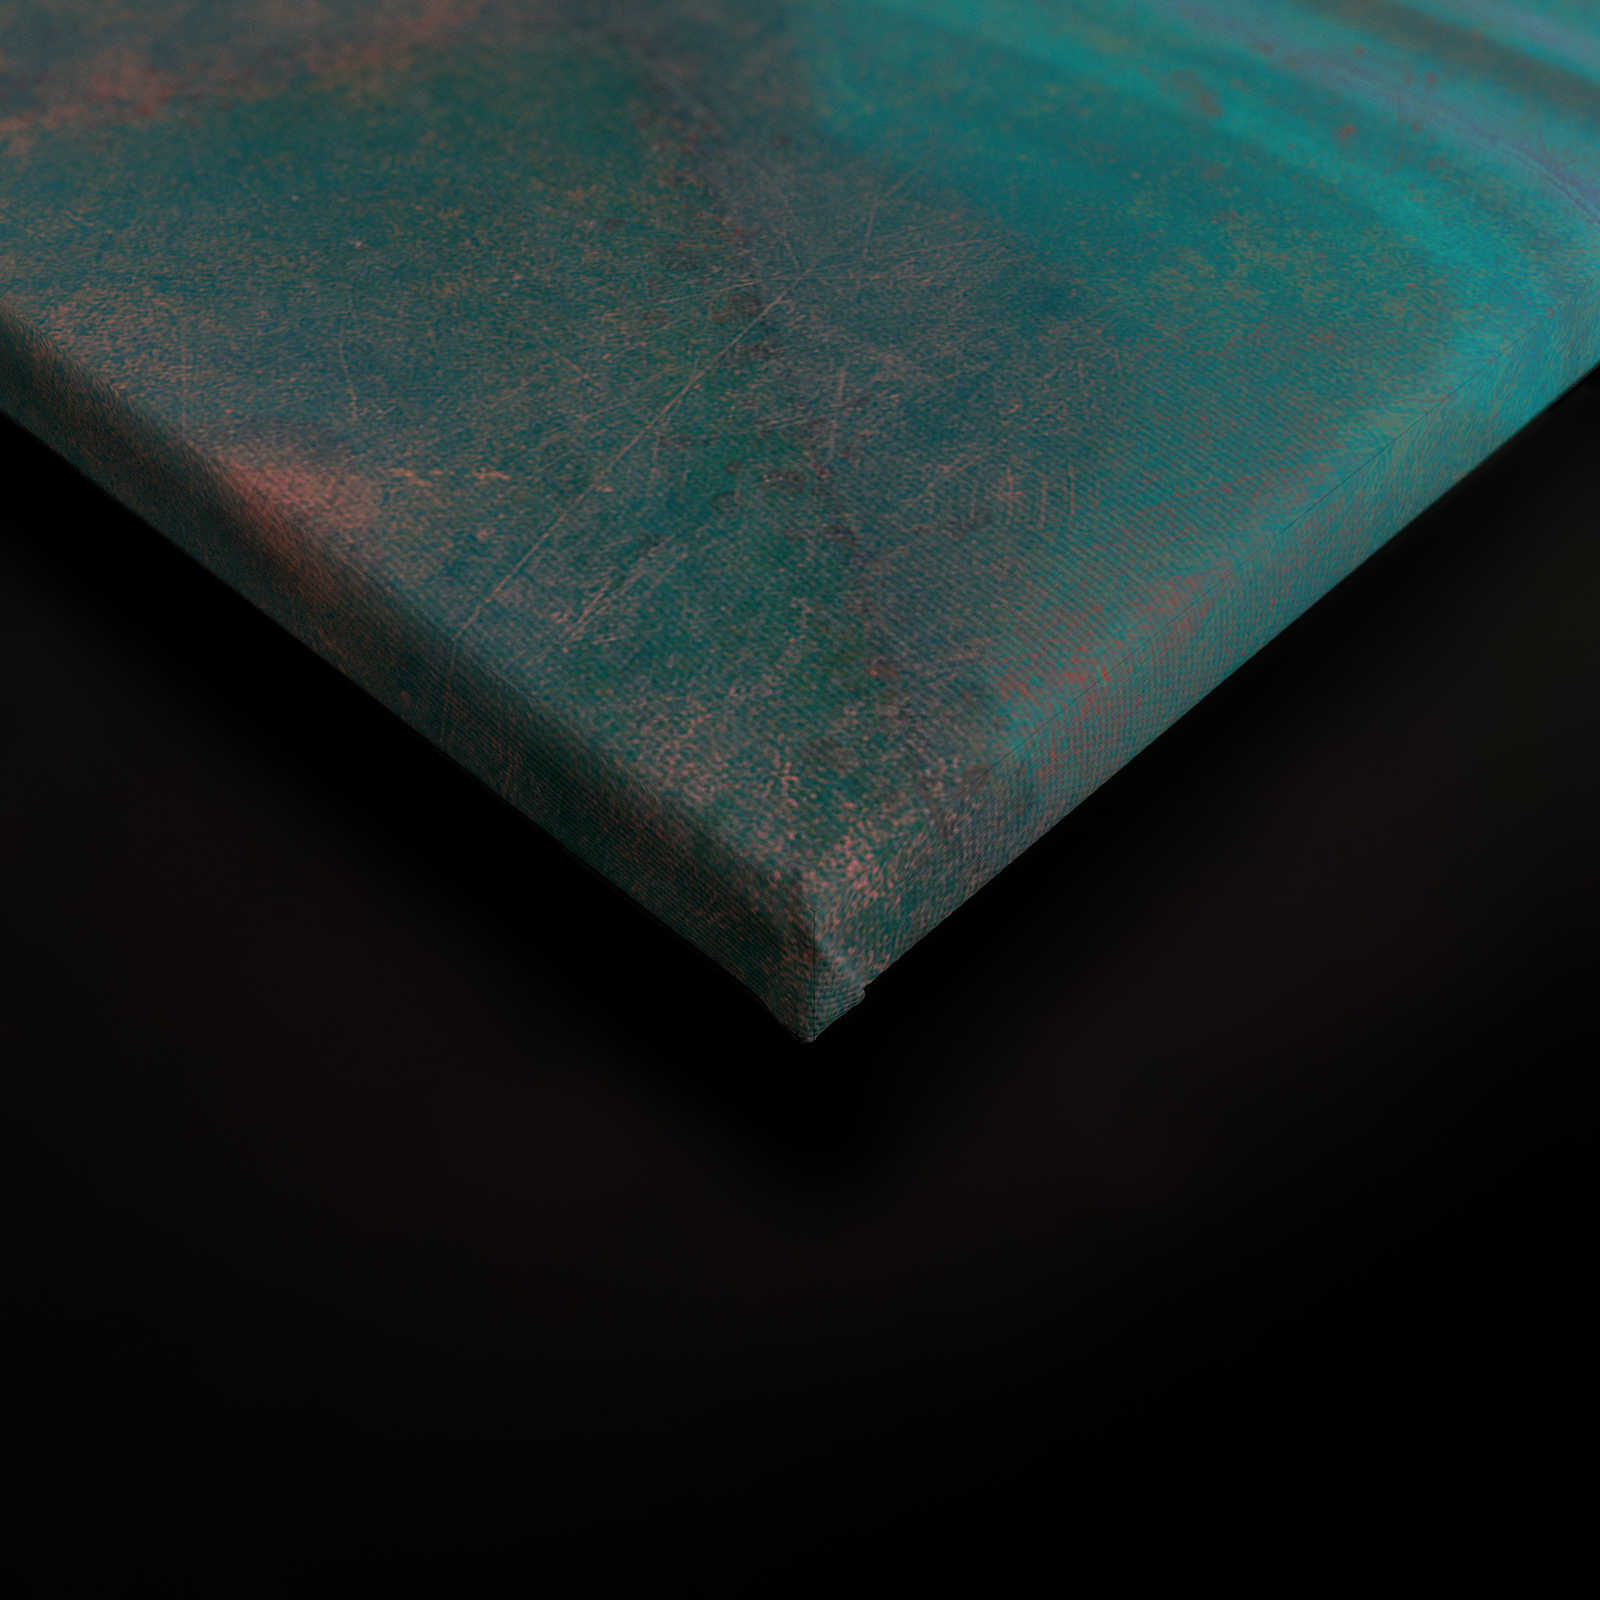             Marmo 3 - Quadro su tela con struttura a graffi in aspetto marmoreo colorato come elemento di spicco - 0,90 m x 0,60 m
        